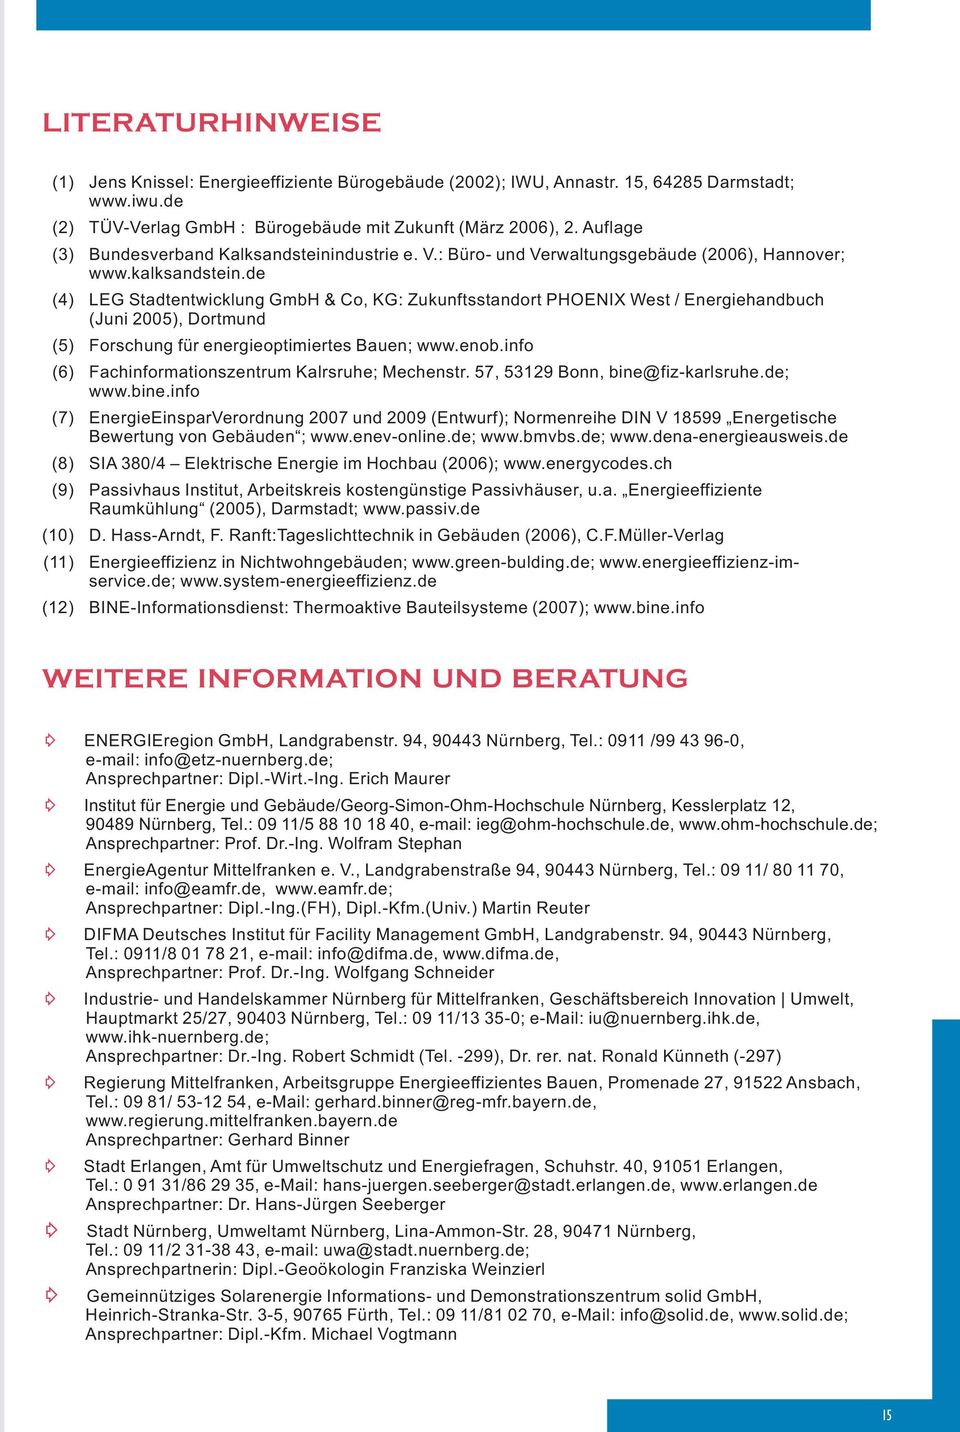 de (4) LEG Stadtentwicklung GmbH & Co, KG: Zukunftsstandort PHOENIX West / Energiehandbuch (Juni 005), Dortmund (5) Forschung für energieoptimiertes Bauen; www.enob.